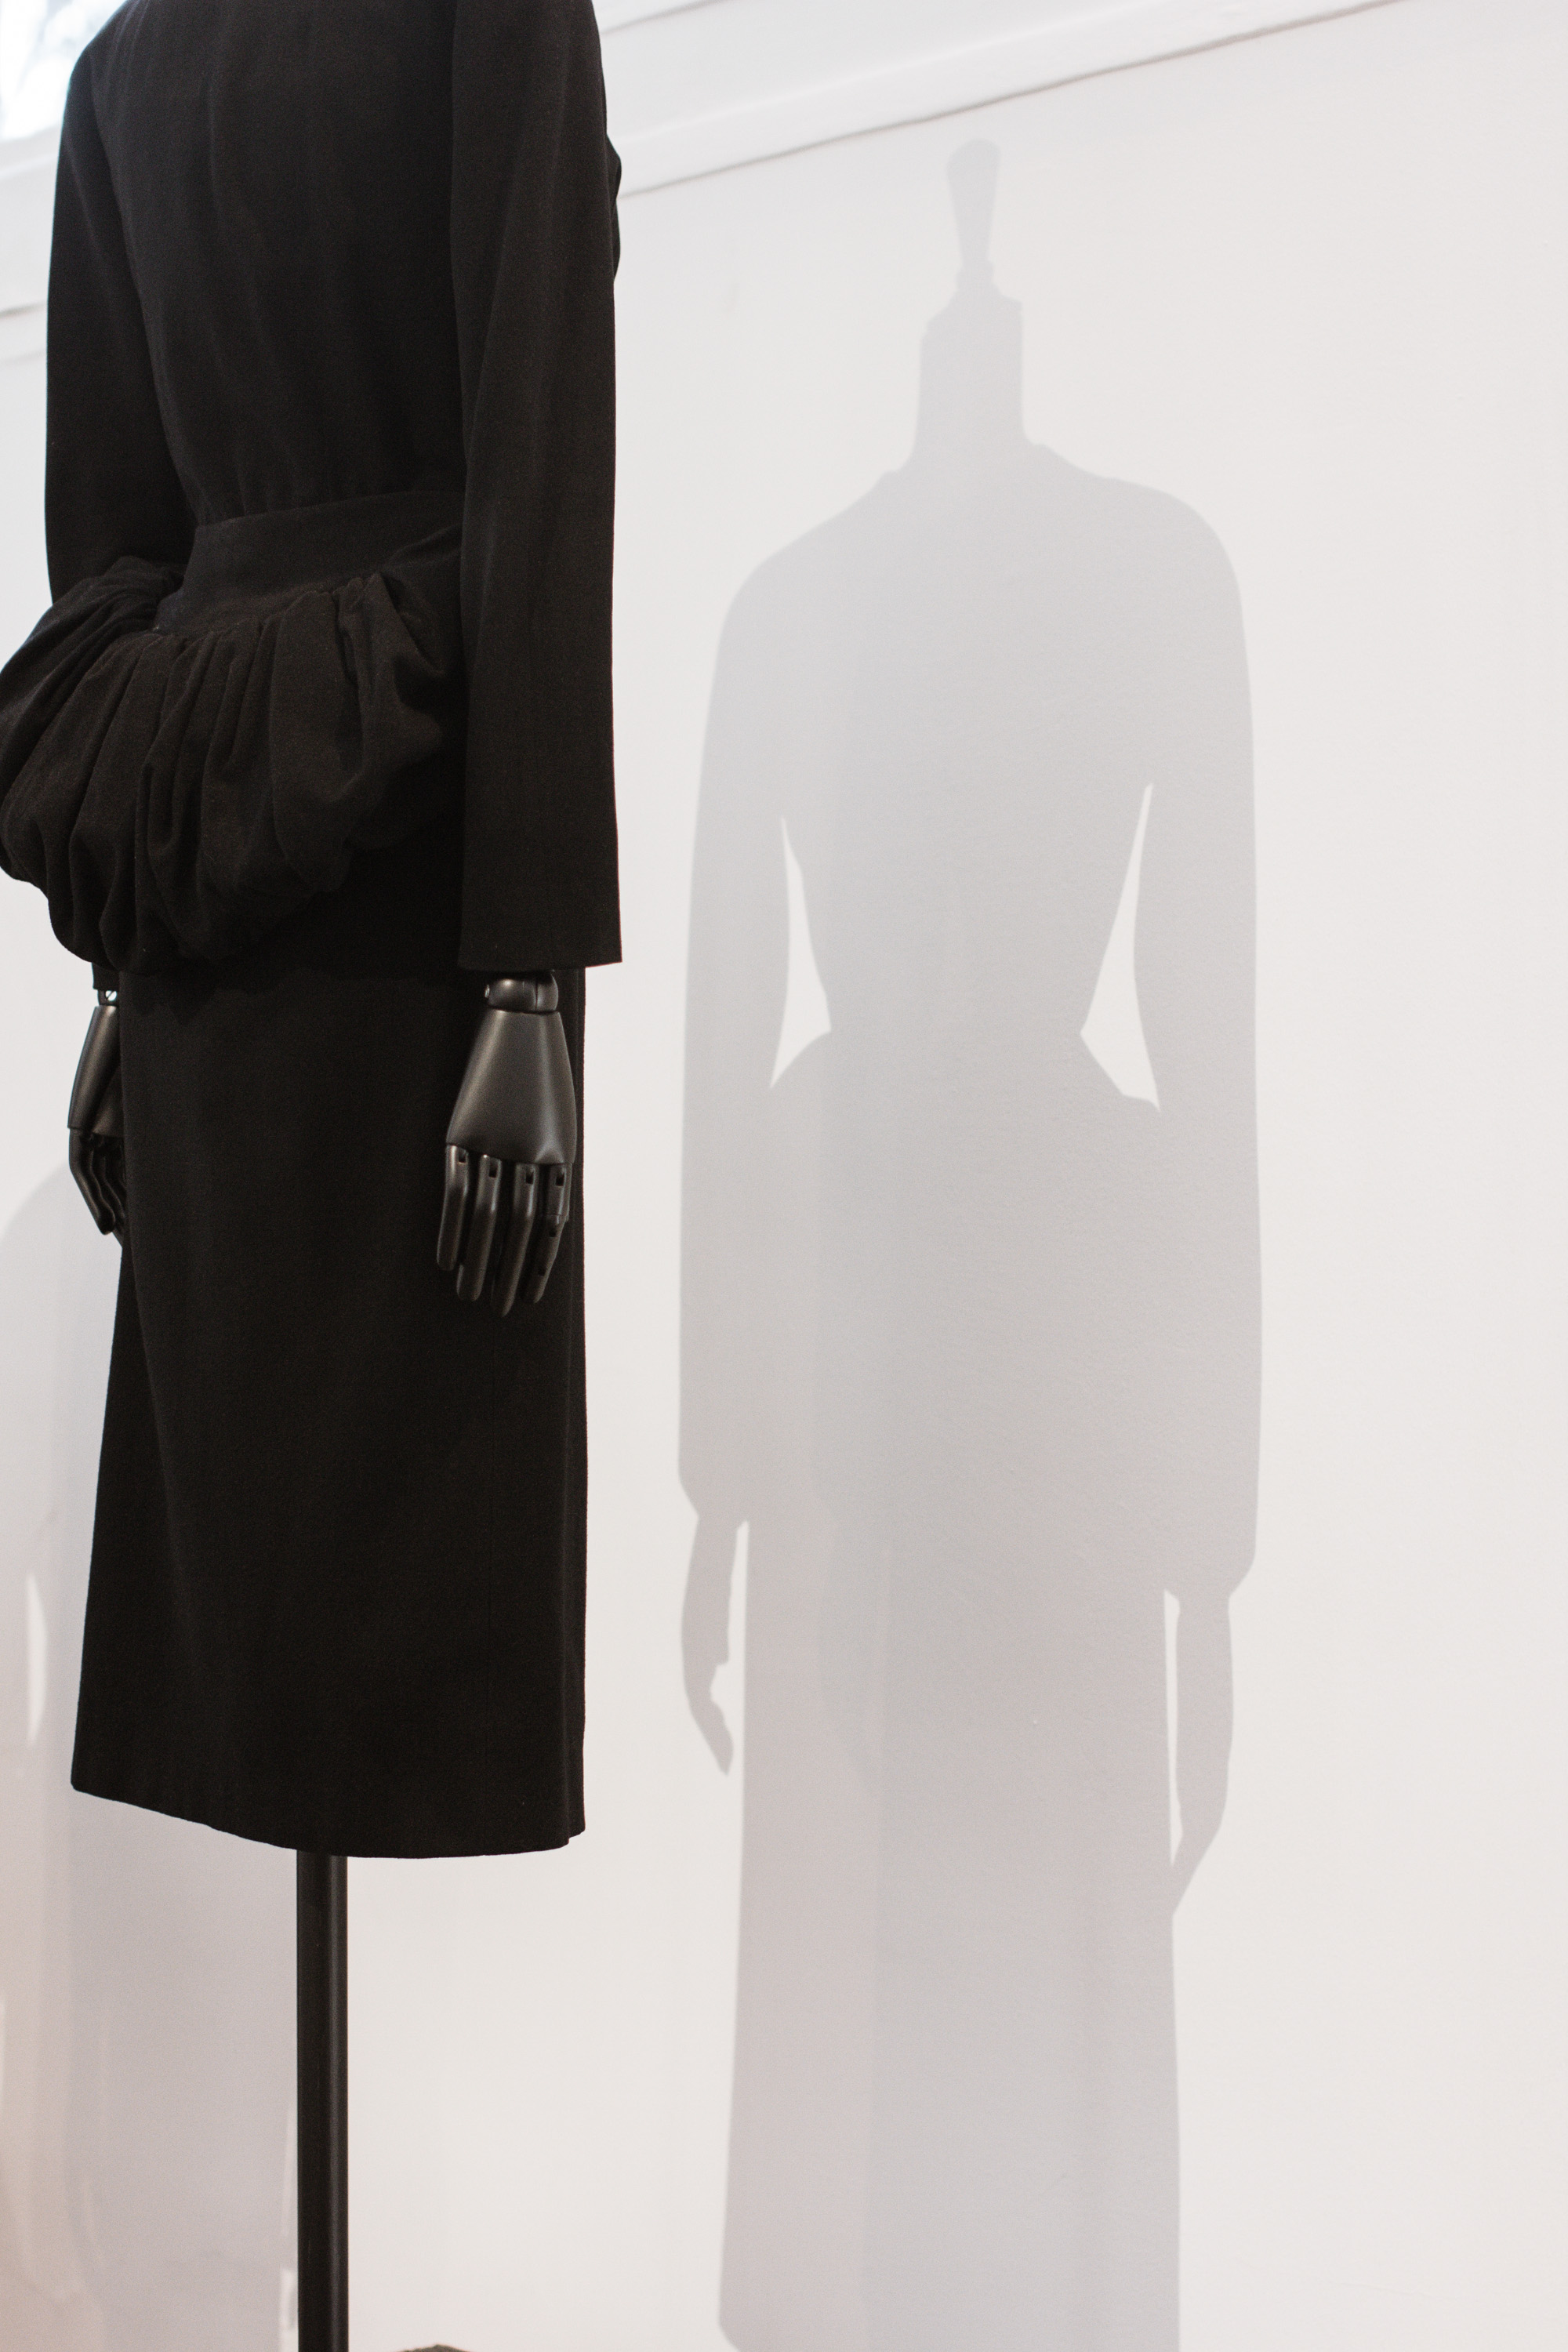 Balenciaga "L'Oeuvre au Noir" exhibition at Musée Bourdelle